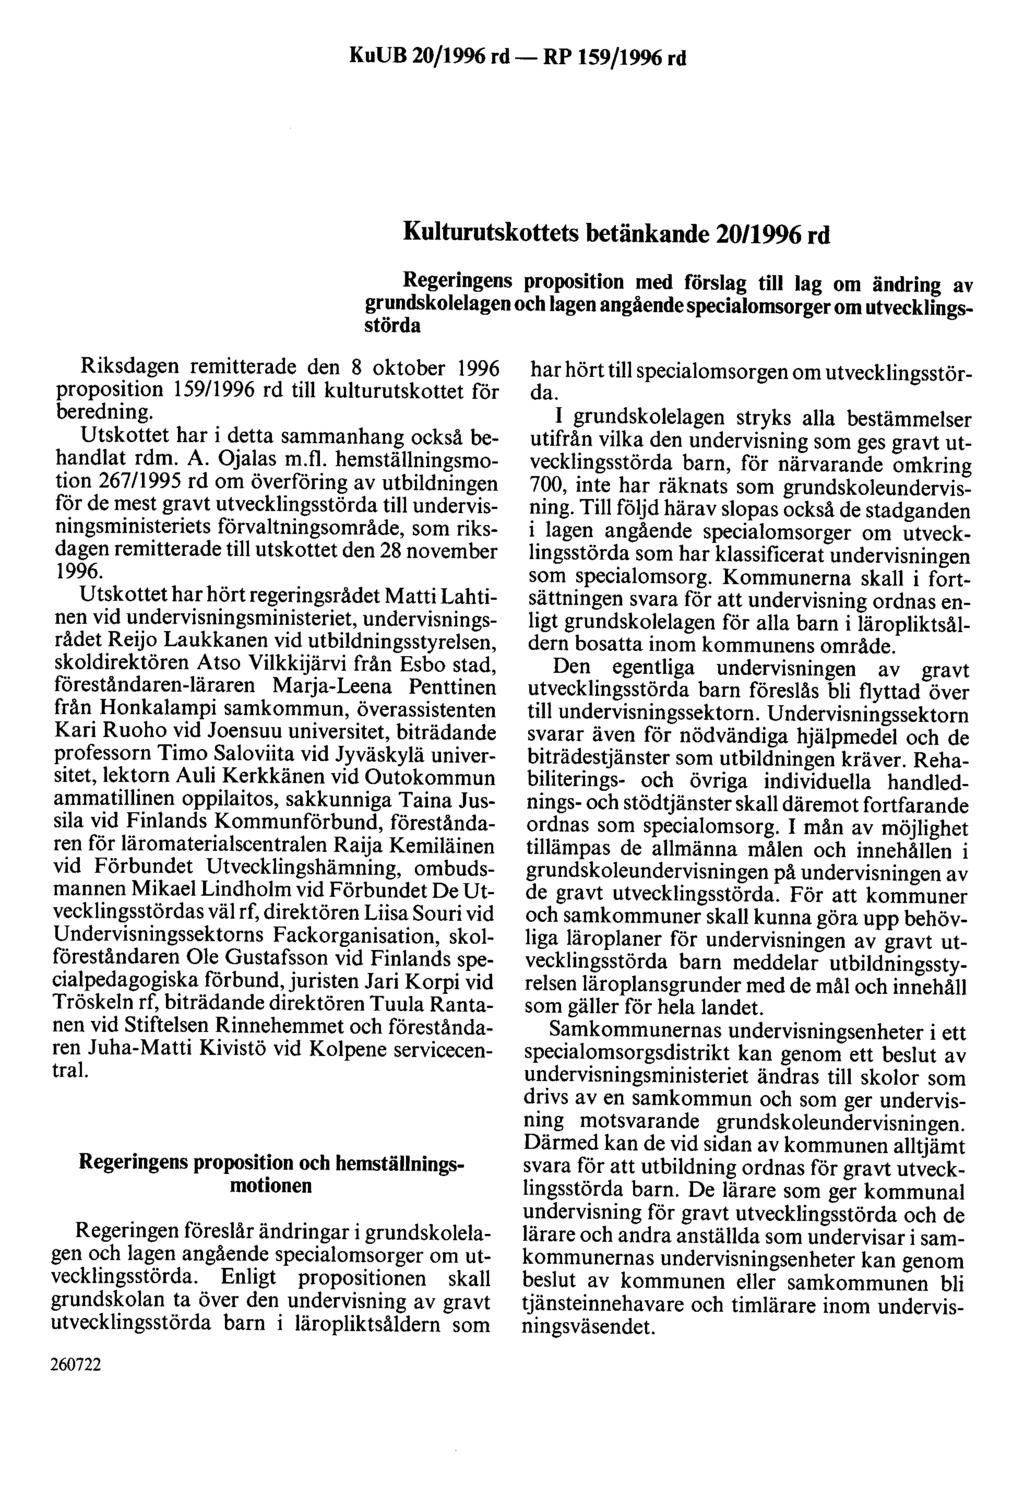 KuUB 20/1996 rd- RP 159/1996 rd Kulturutskottets betänkande 20/1996 rd Regeringens proposition med förslag till lag om ändring av grundskolelagen och lagen angående specialomsorger om